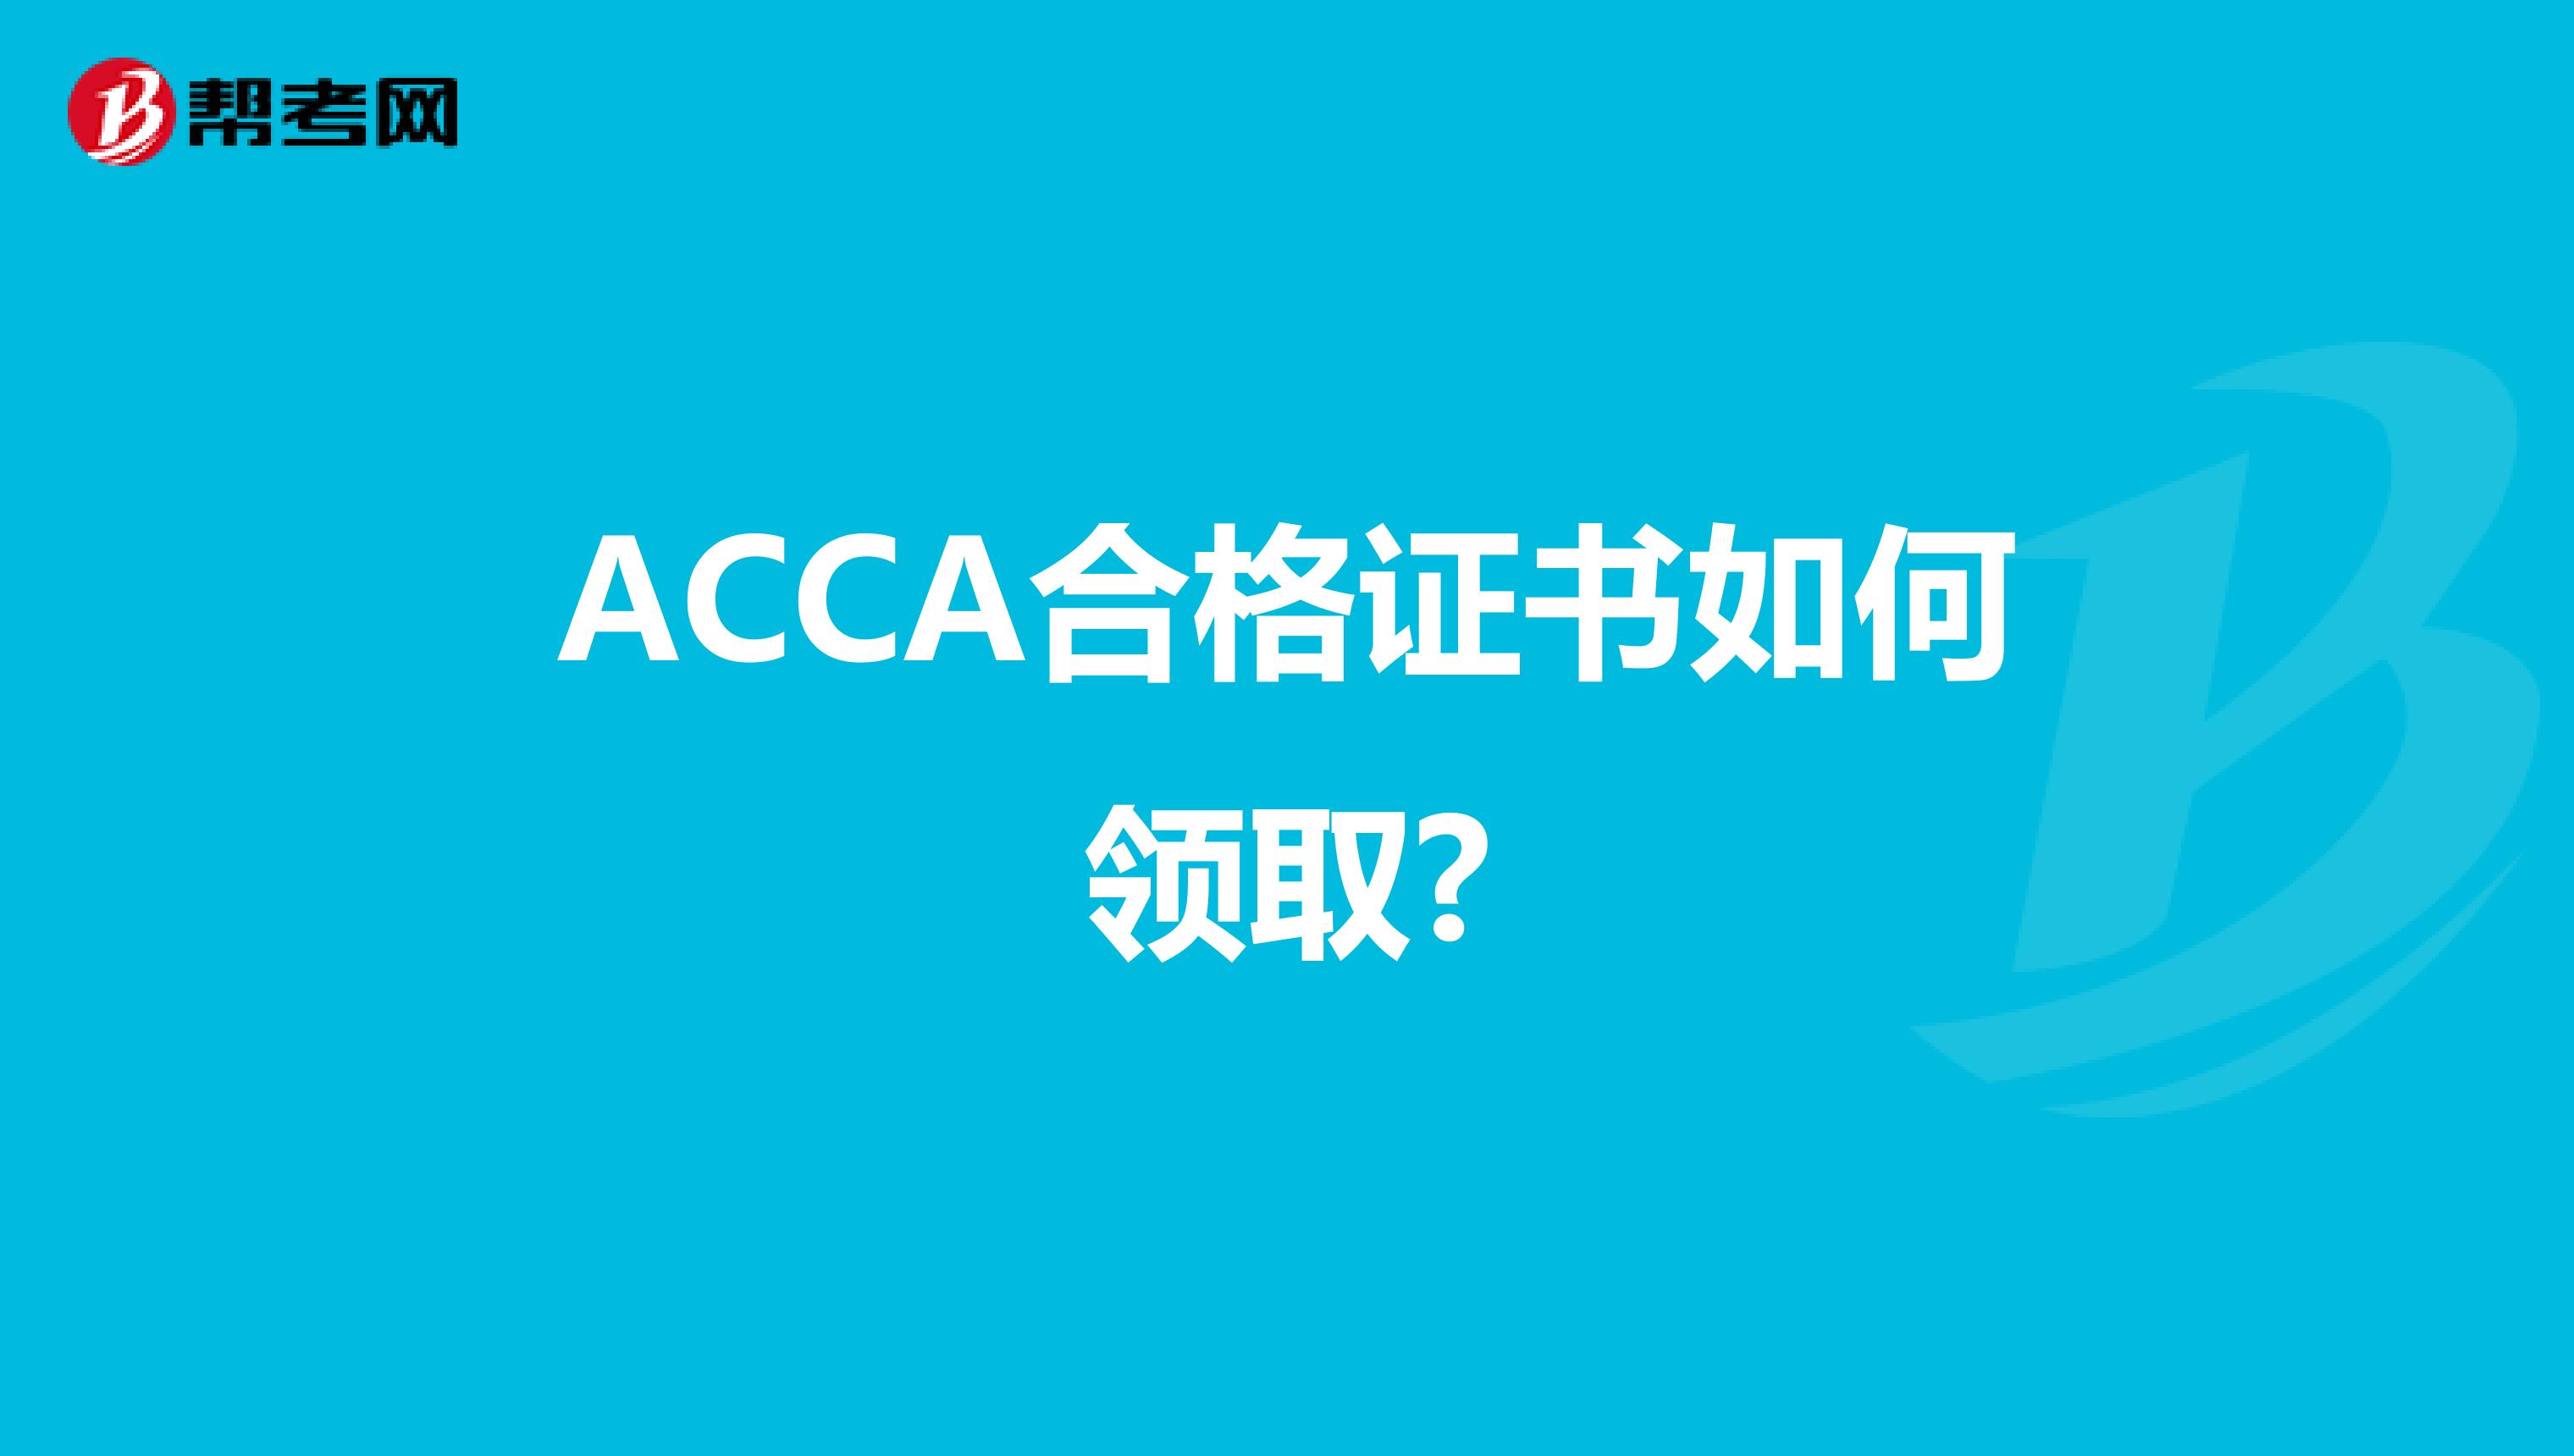 ACCA合格证书如何领取?